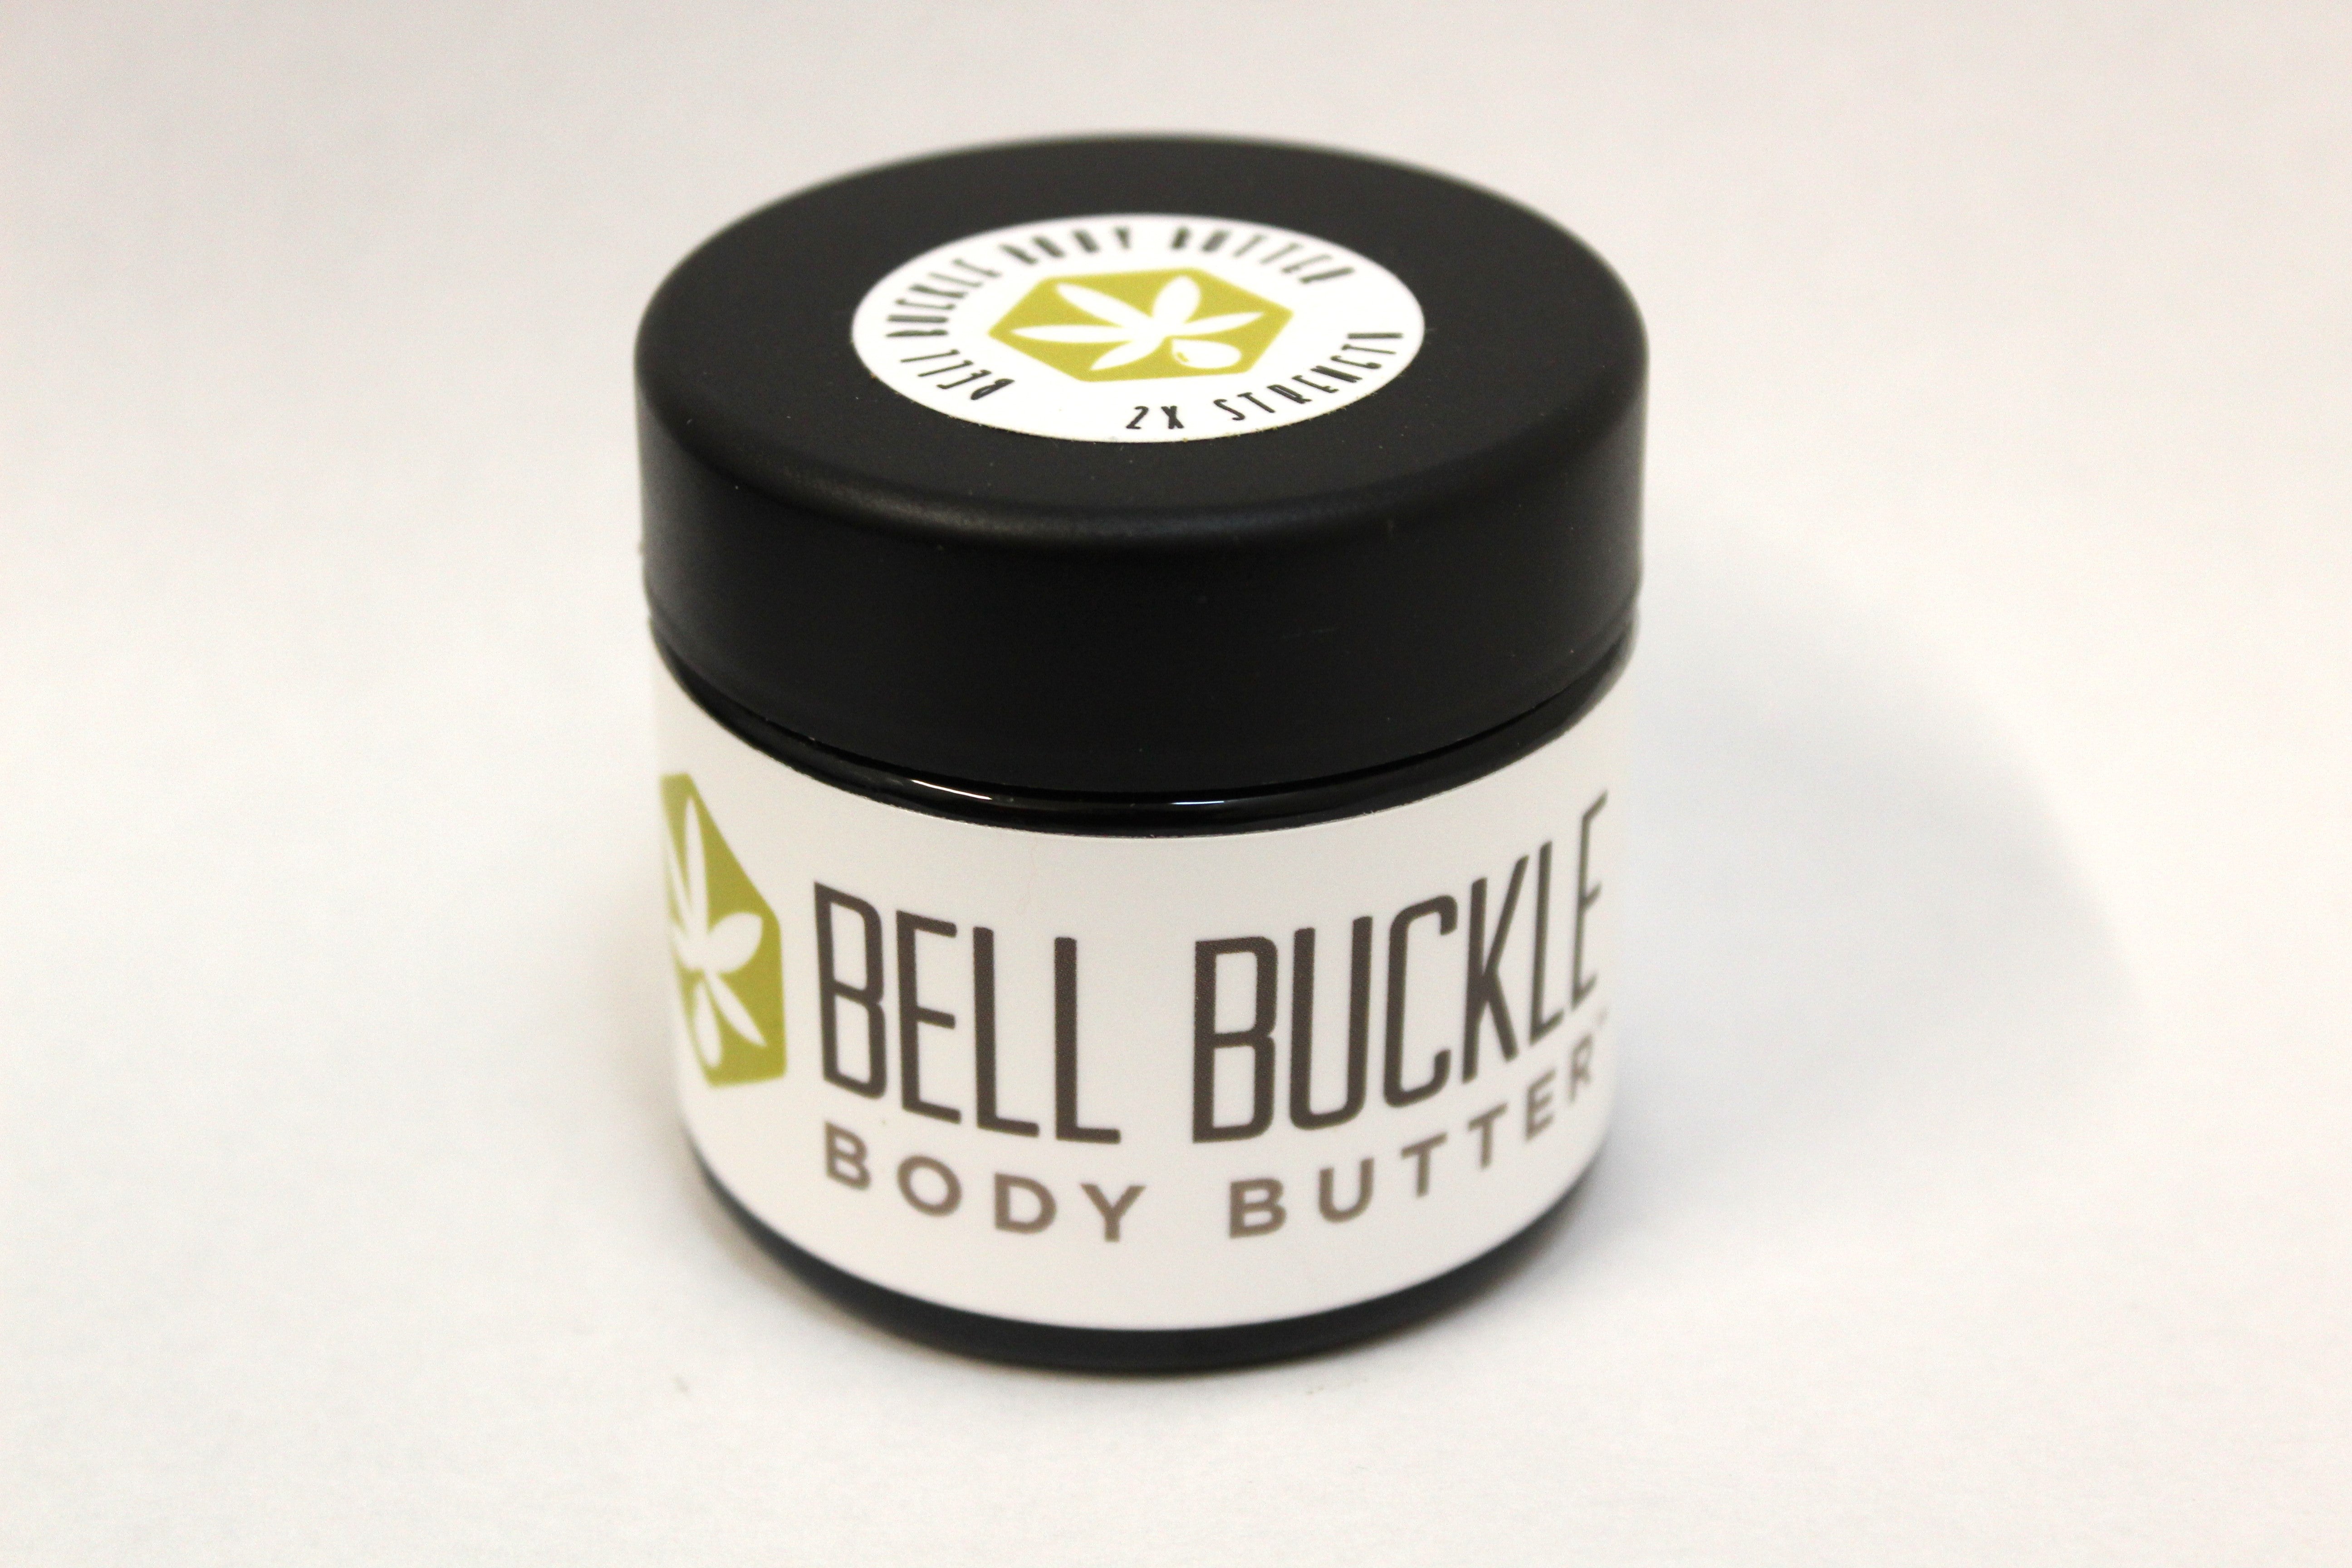 Bell Buckle Body Butter